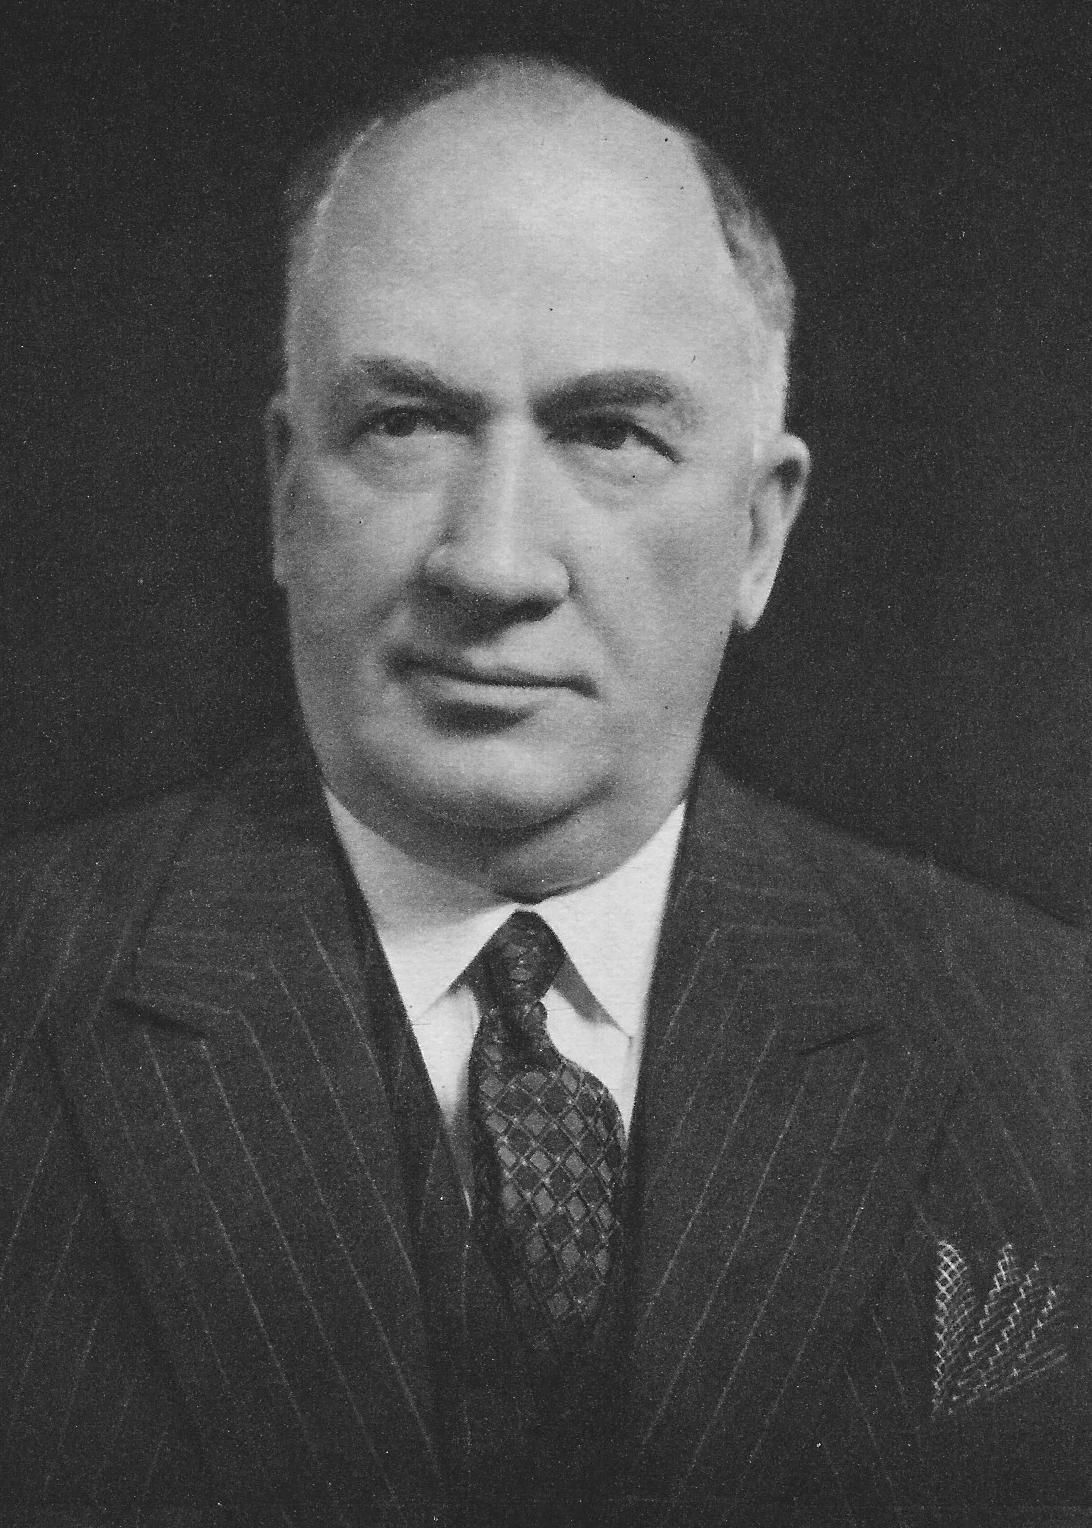 William L. Hutcheson